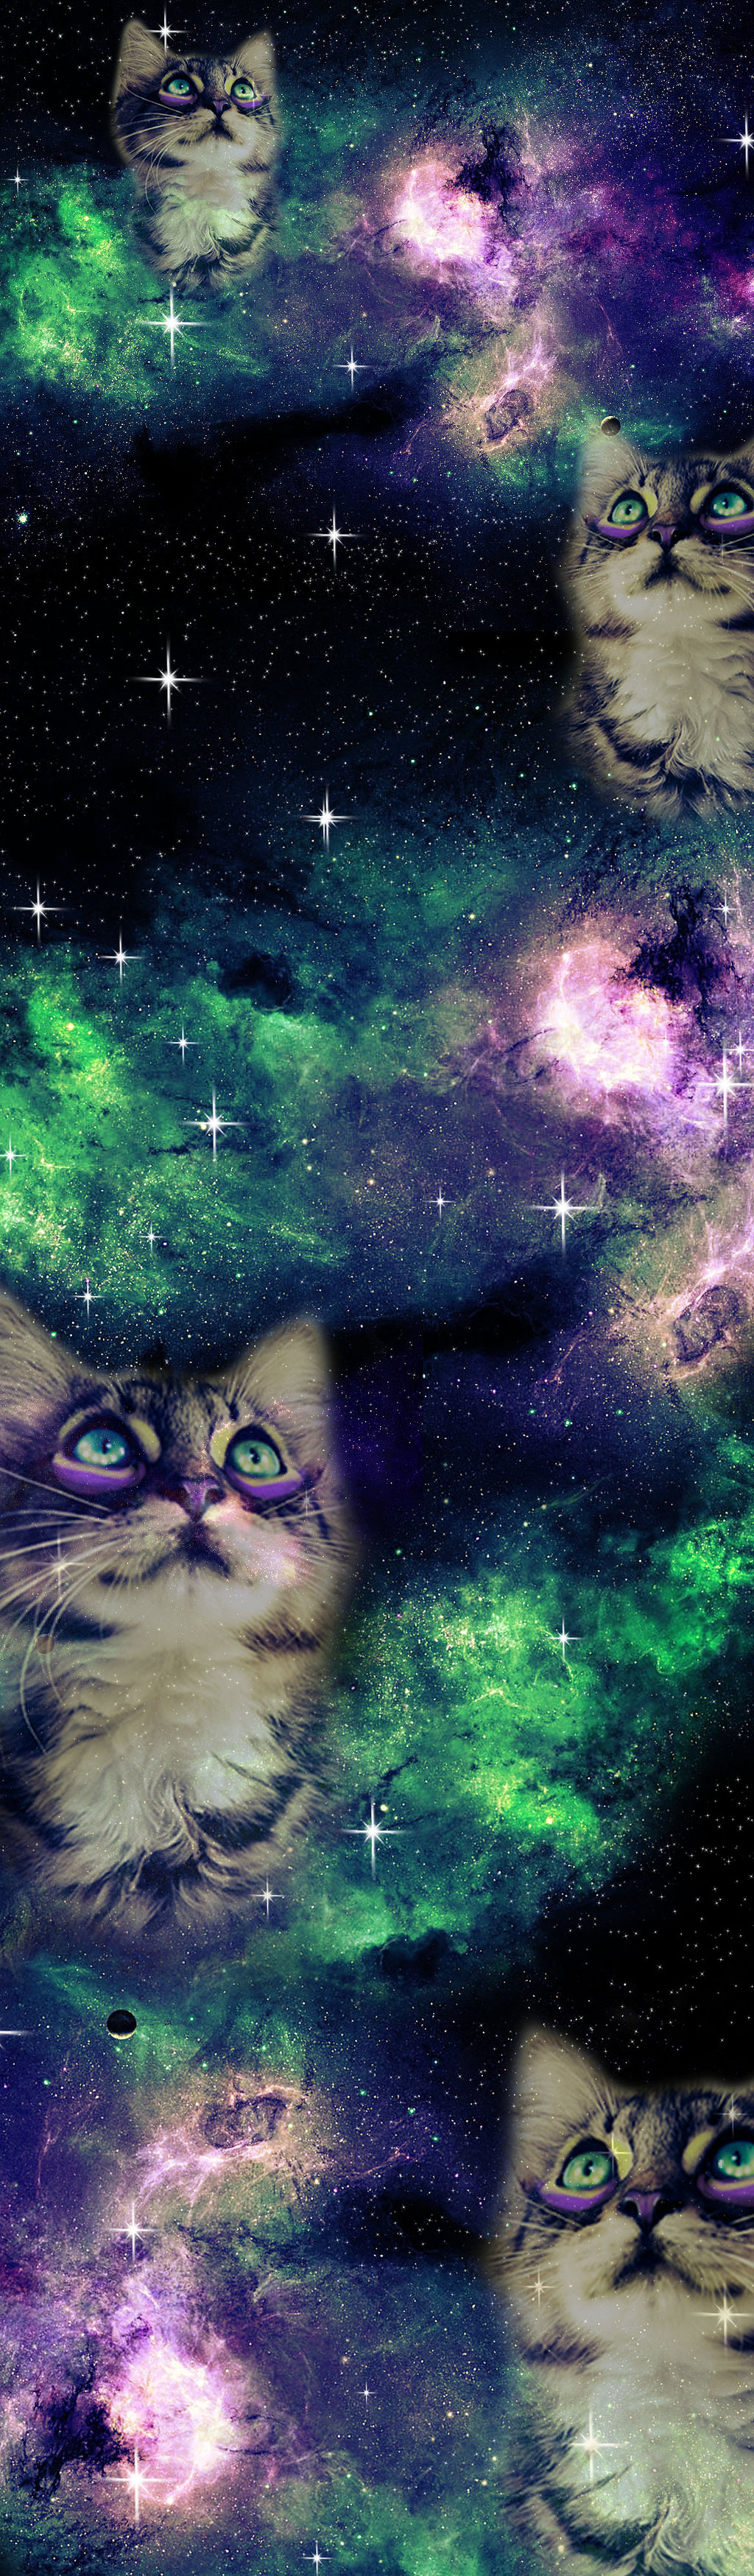 Galaxy Cat Box Background By Sarah Elizabeth